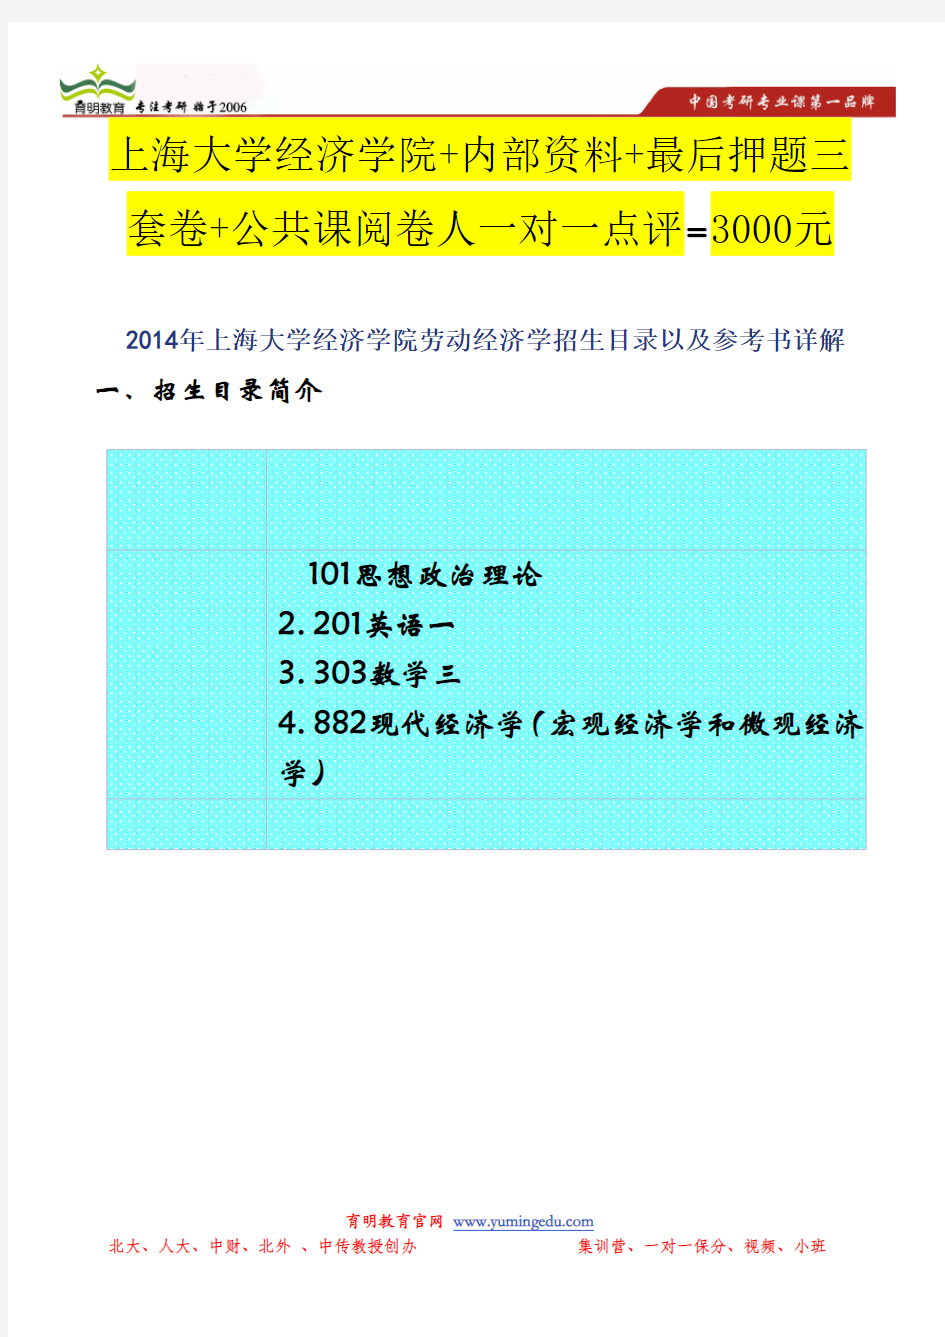 2014年上海大学经济学院劳动经济学招生目录以及参考书详解